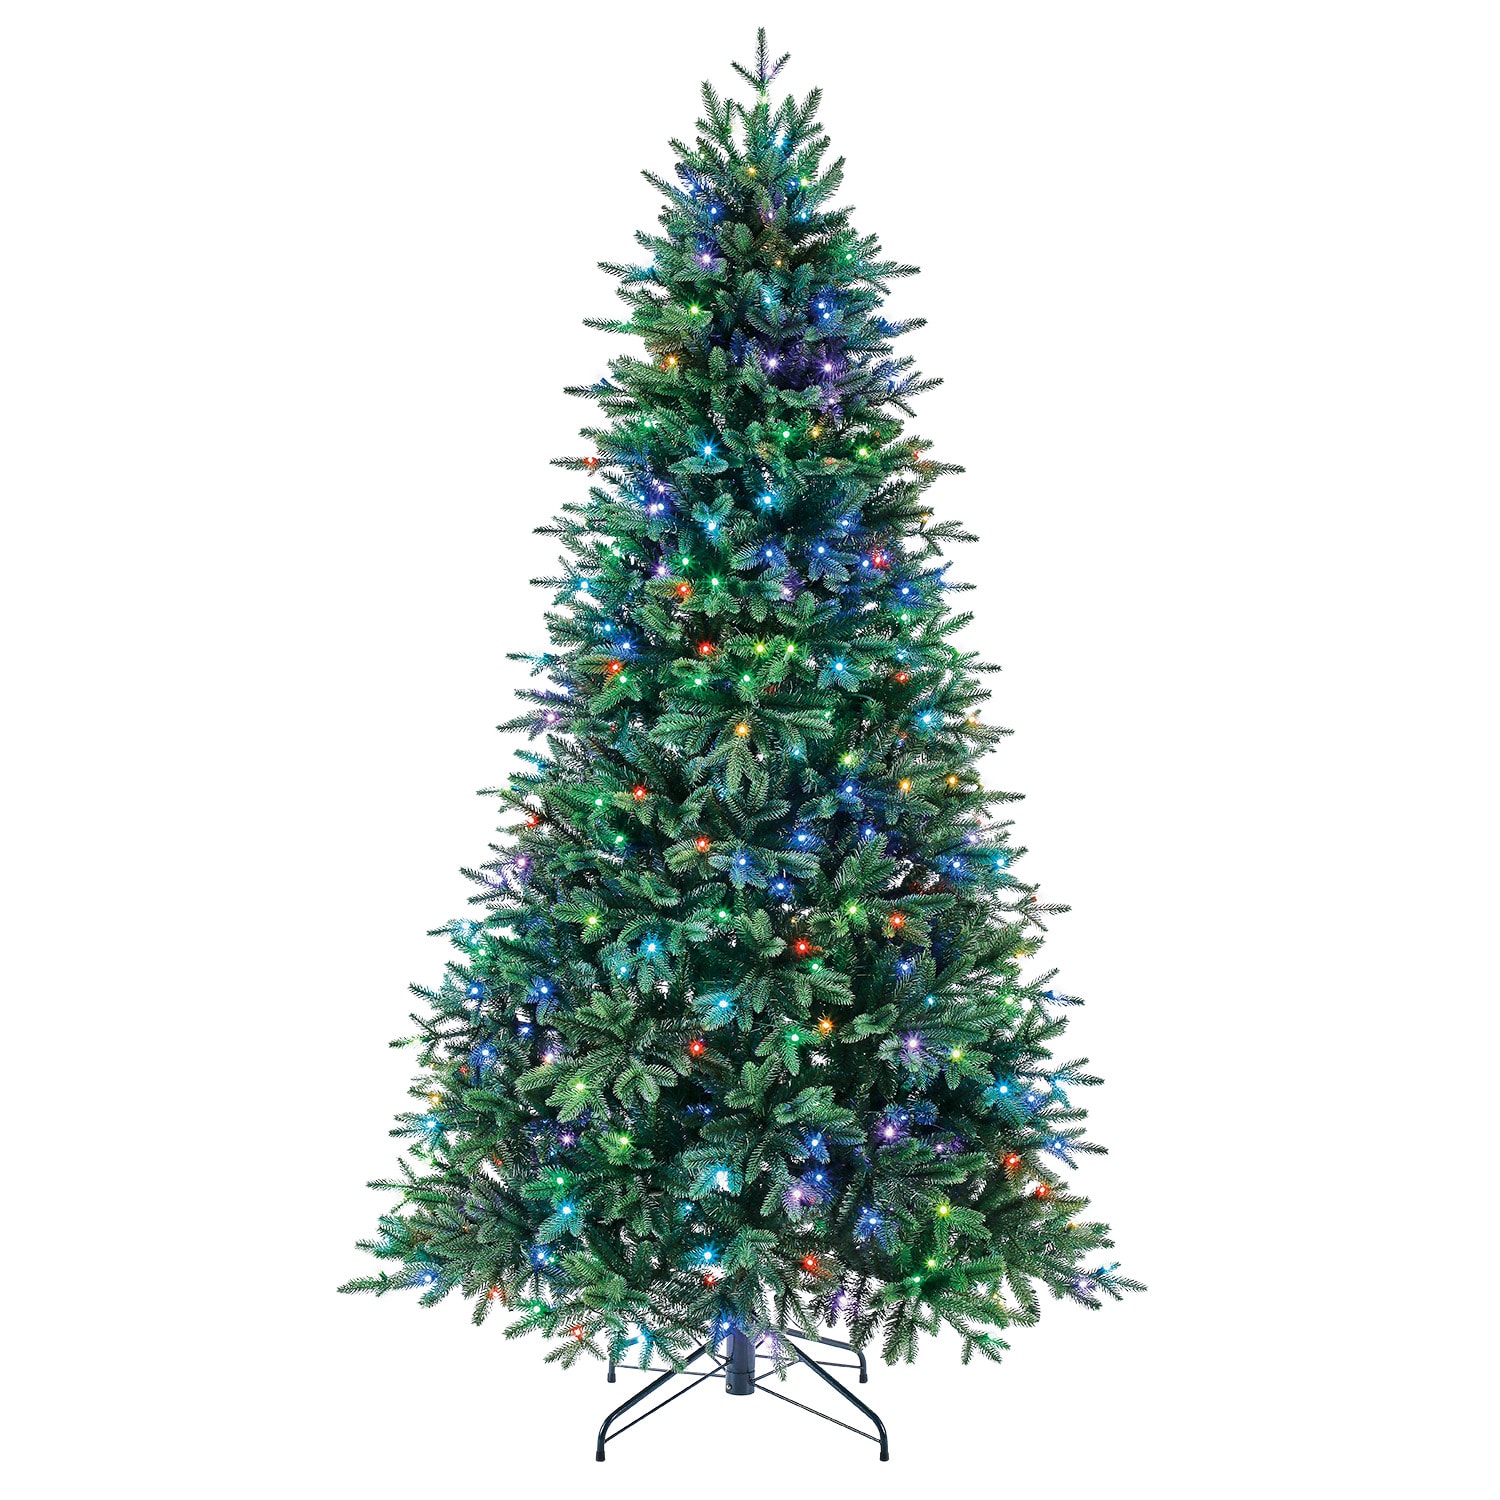 7.5' Pine Christmas Tree